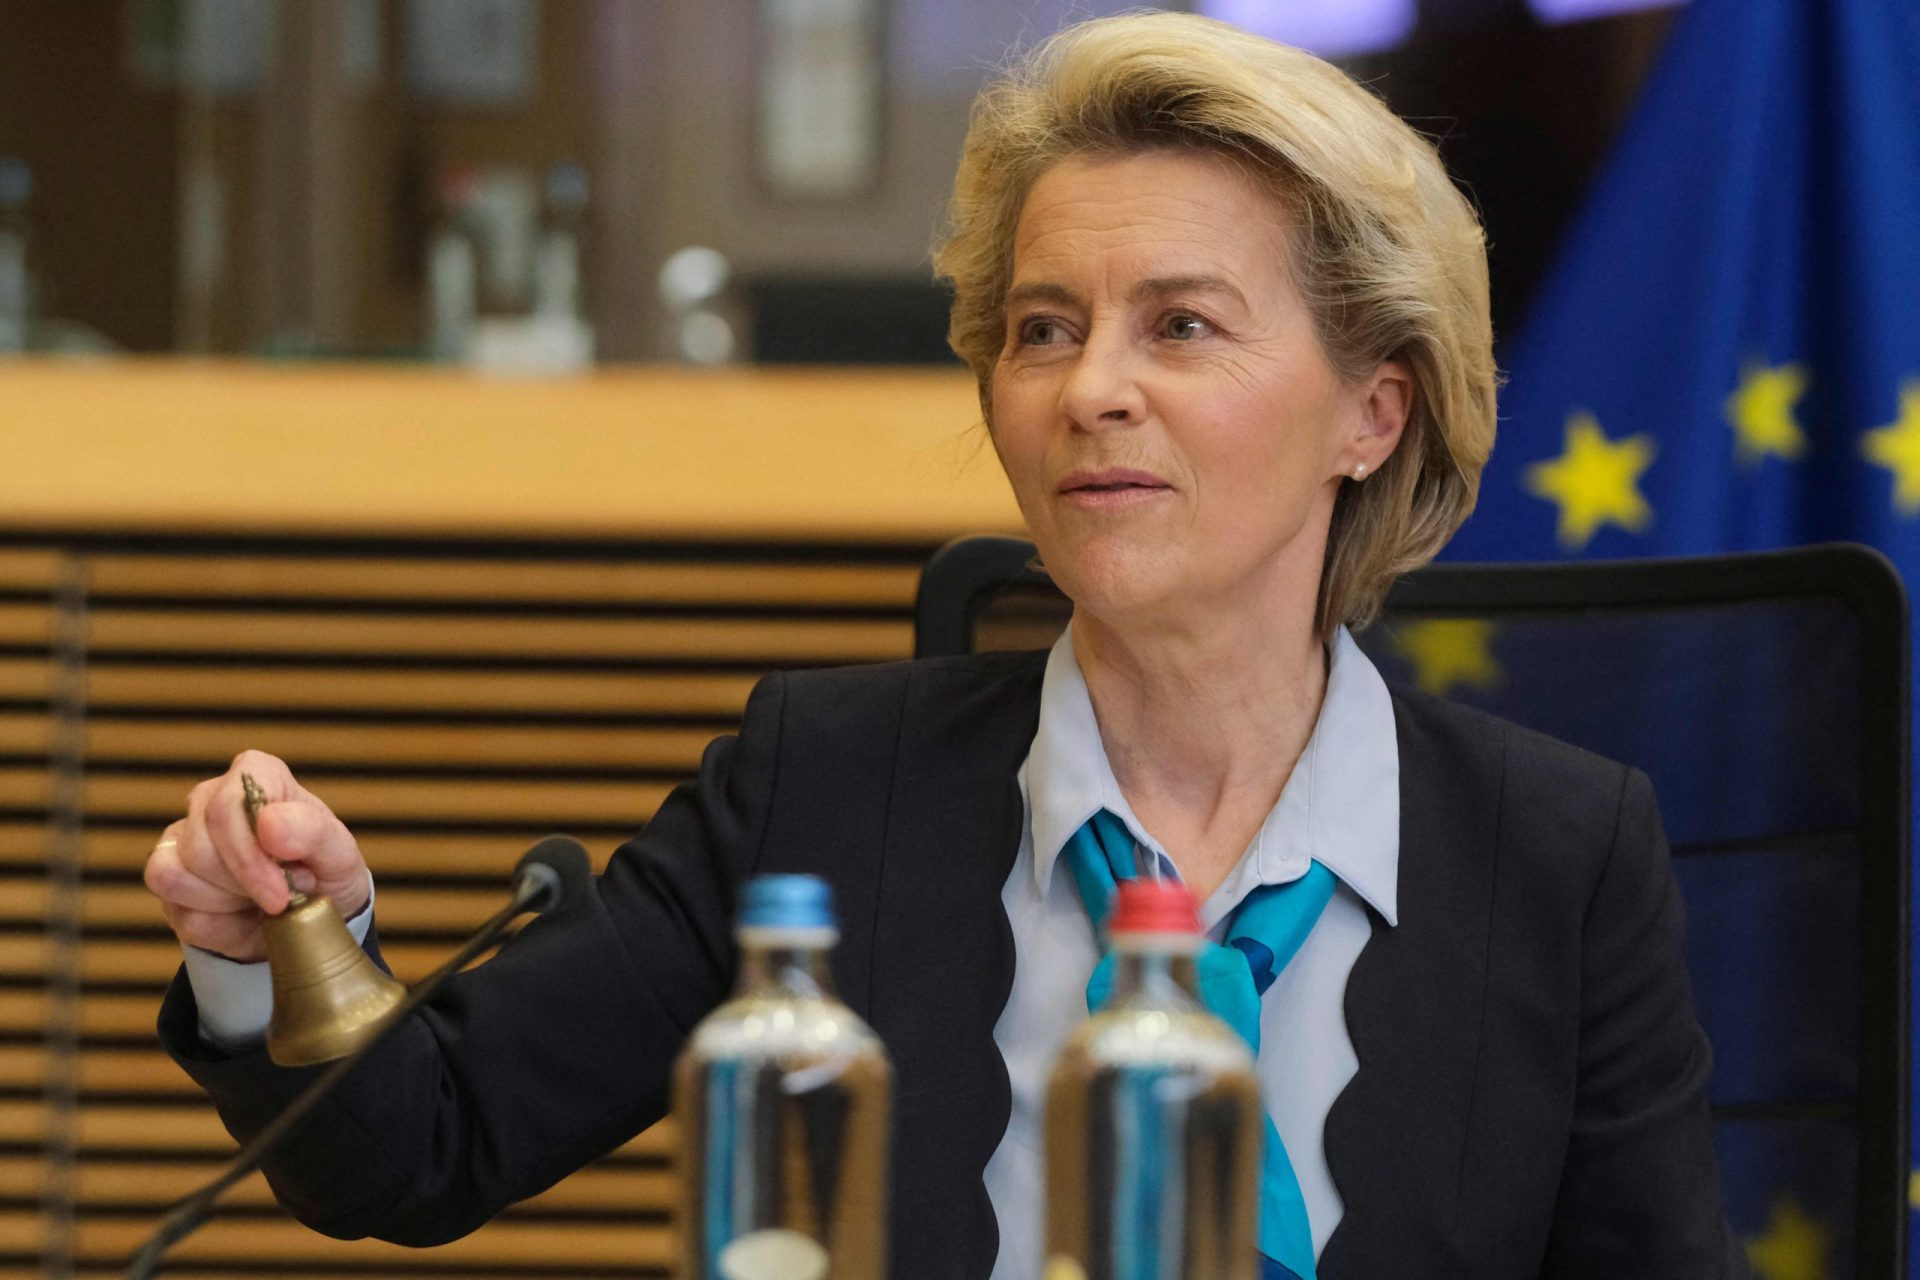 Ursula Von der Leyen garante início do caminho europeu da Ucrânia e &#8220;apoio inabalável&#8221; a Zelensky